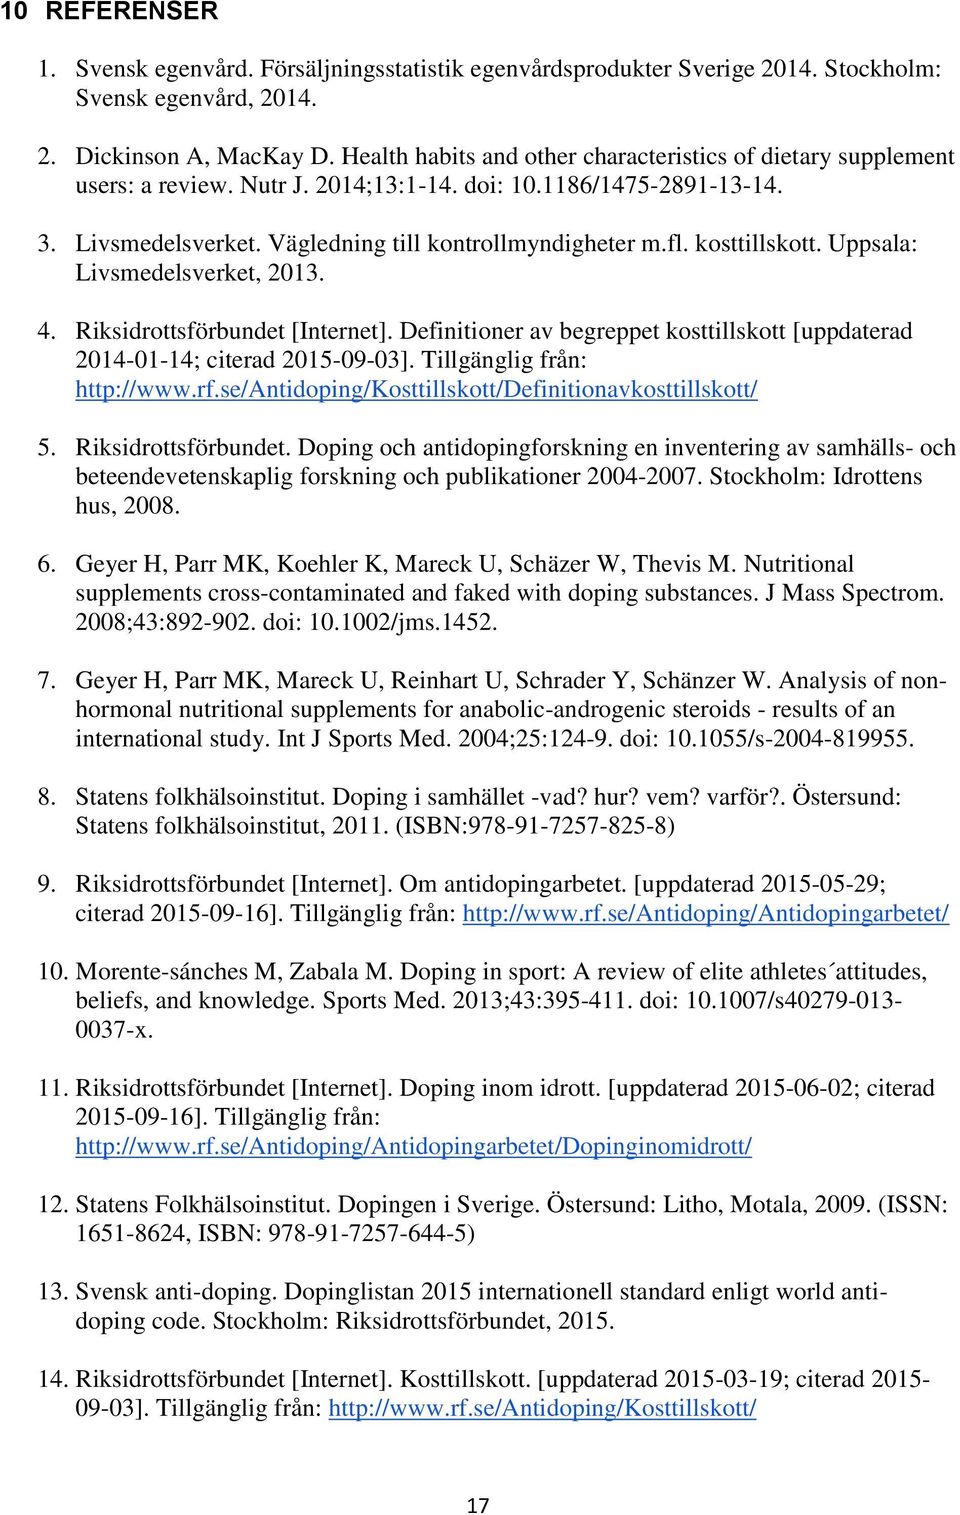 kosttillskott. Uppsala: Livsmedelsverket, 2013. 4. Riksidrottsförbundet [Internet]. Definitioner av begreppet kosttillskott [uppdaterad 2014-01-14; citerad 2015-09-03]. Tillgänglig från: http://www.